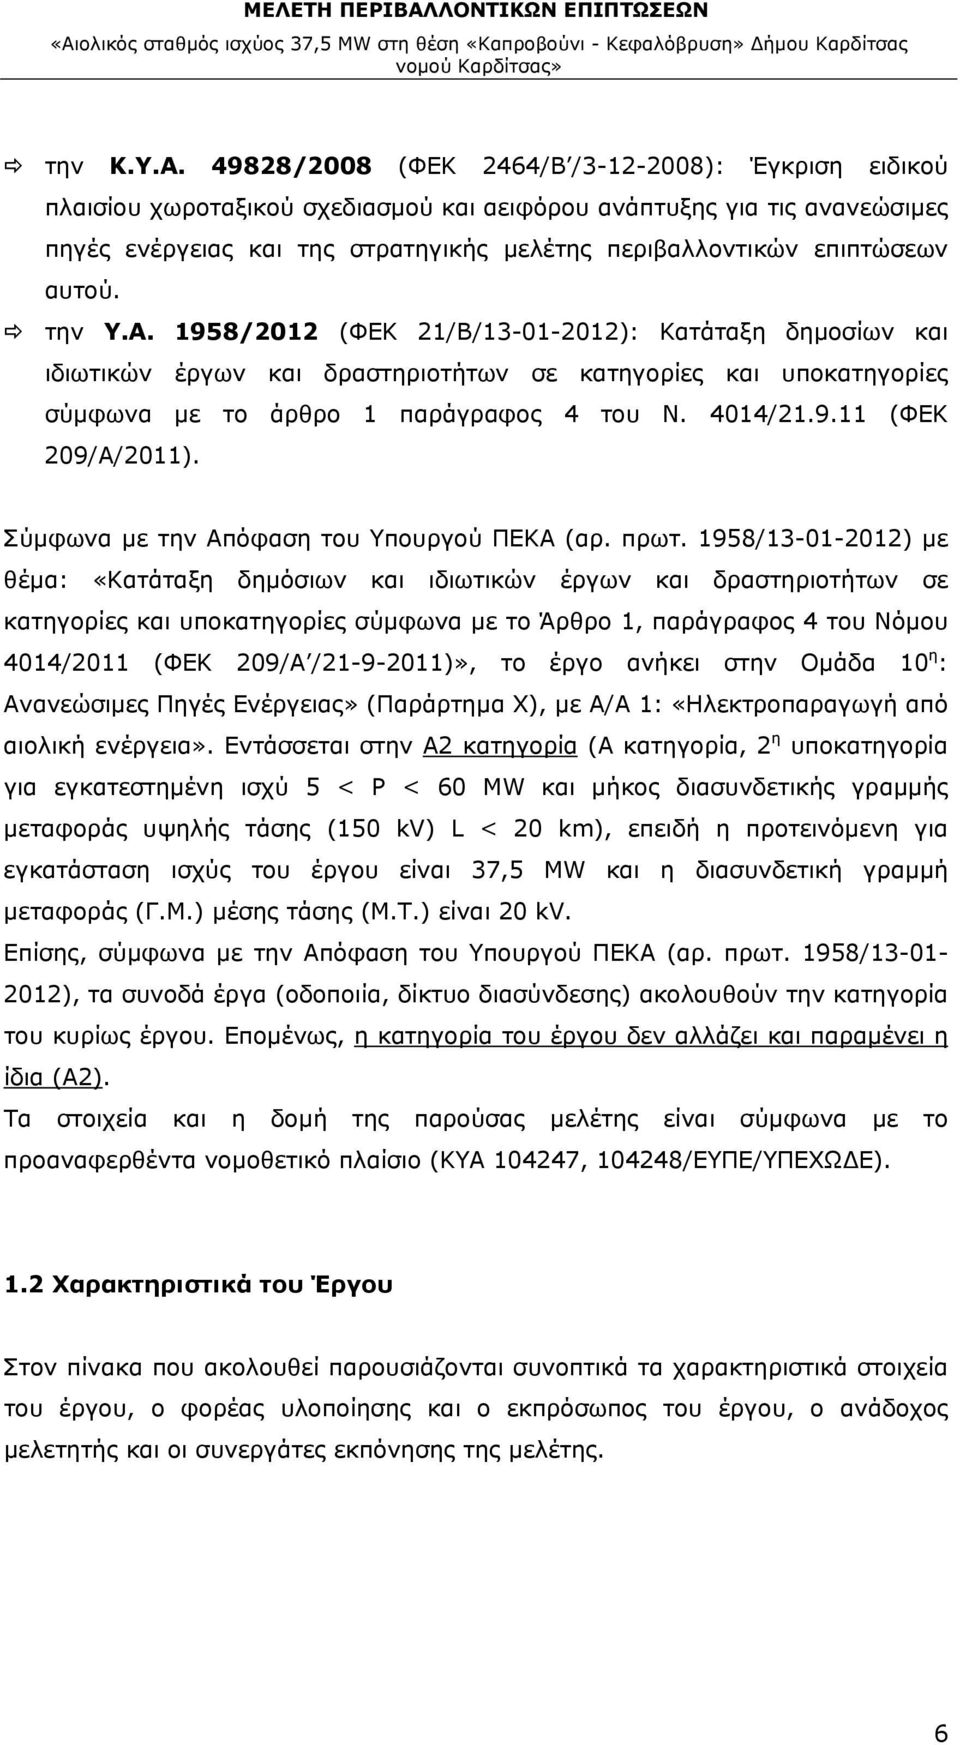 αυτού. την Υ.Α. 1958/2012 (ΦΕΚ 21/Β/13-01-2012): Κατάταξη δημοσίων και ιδιωτικών έργων και δραστηριοτήτων σε κατηγορίες και υποκατηγορίες σύμφωνα με το άρθρο 1 παράγραφος 4 του Ν. 4014/21.9.11 (ΦΕΚ 209/Α/2011).